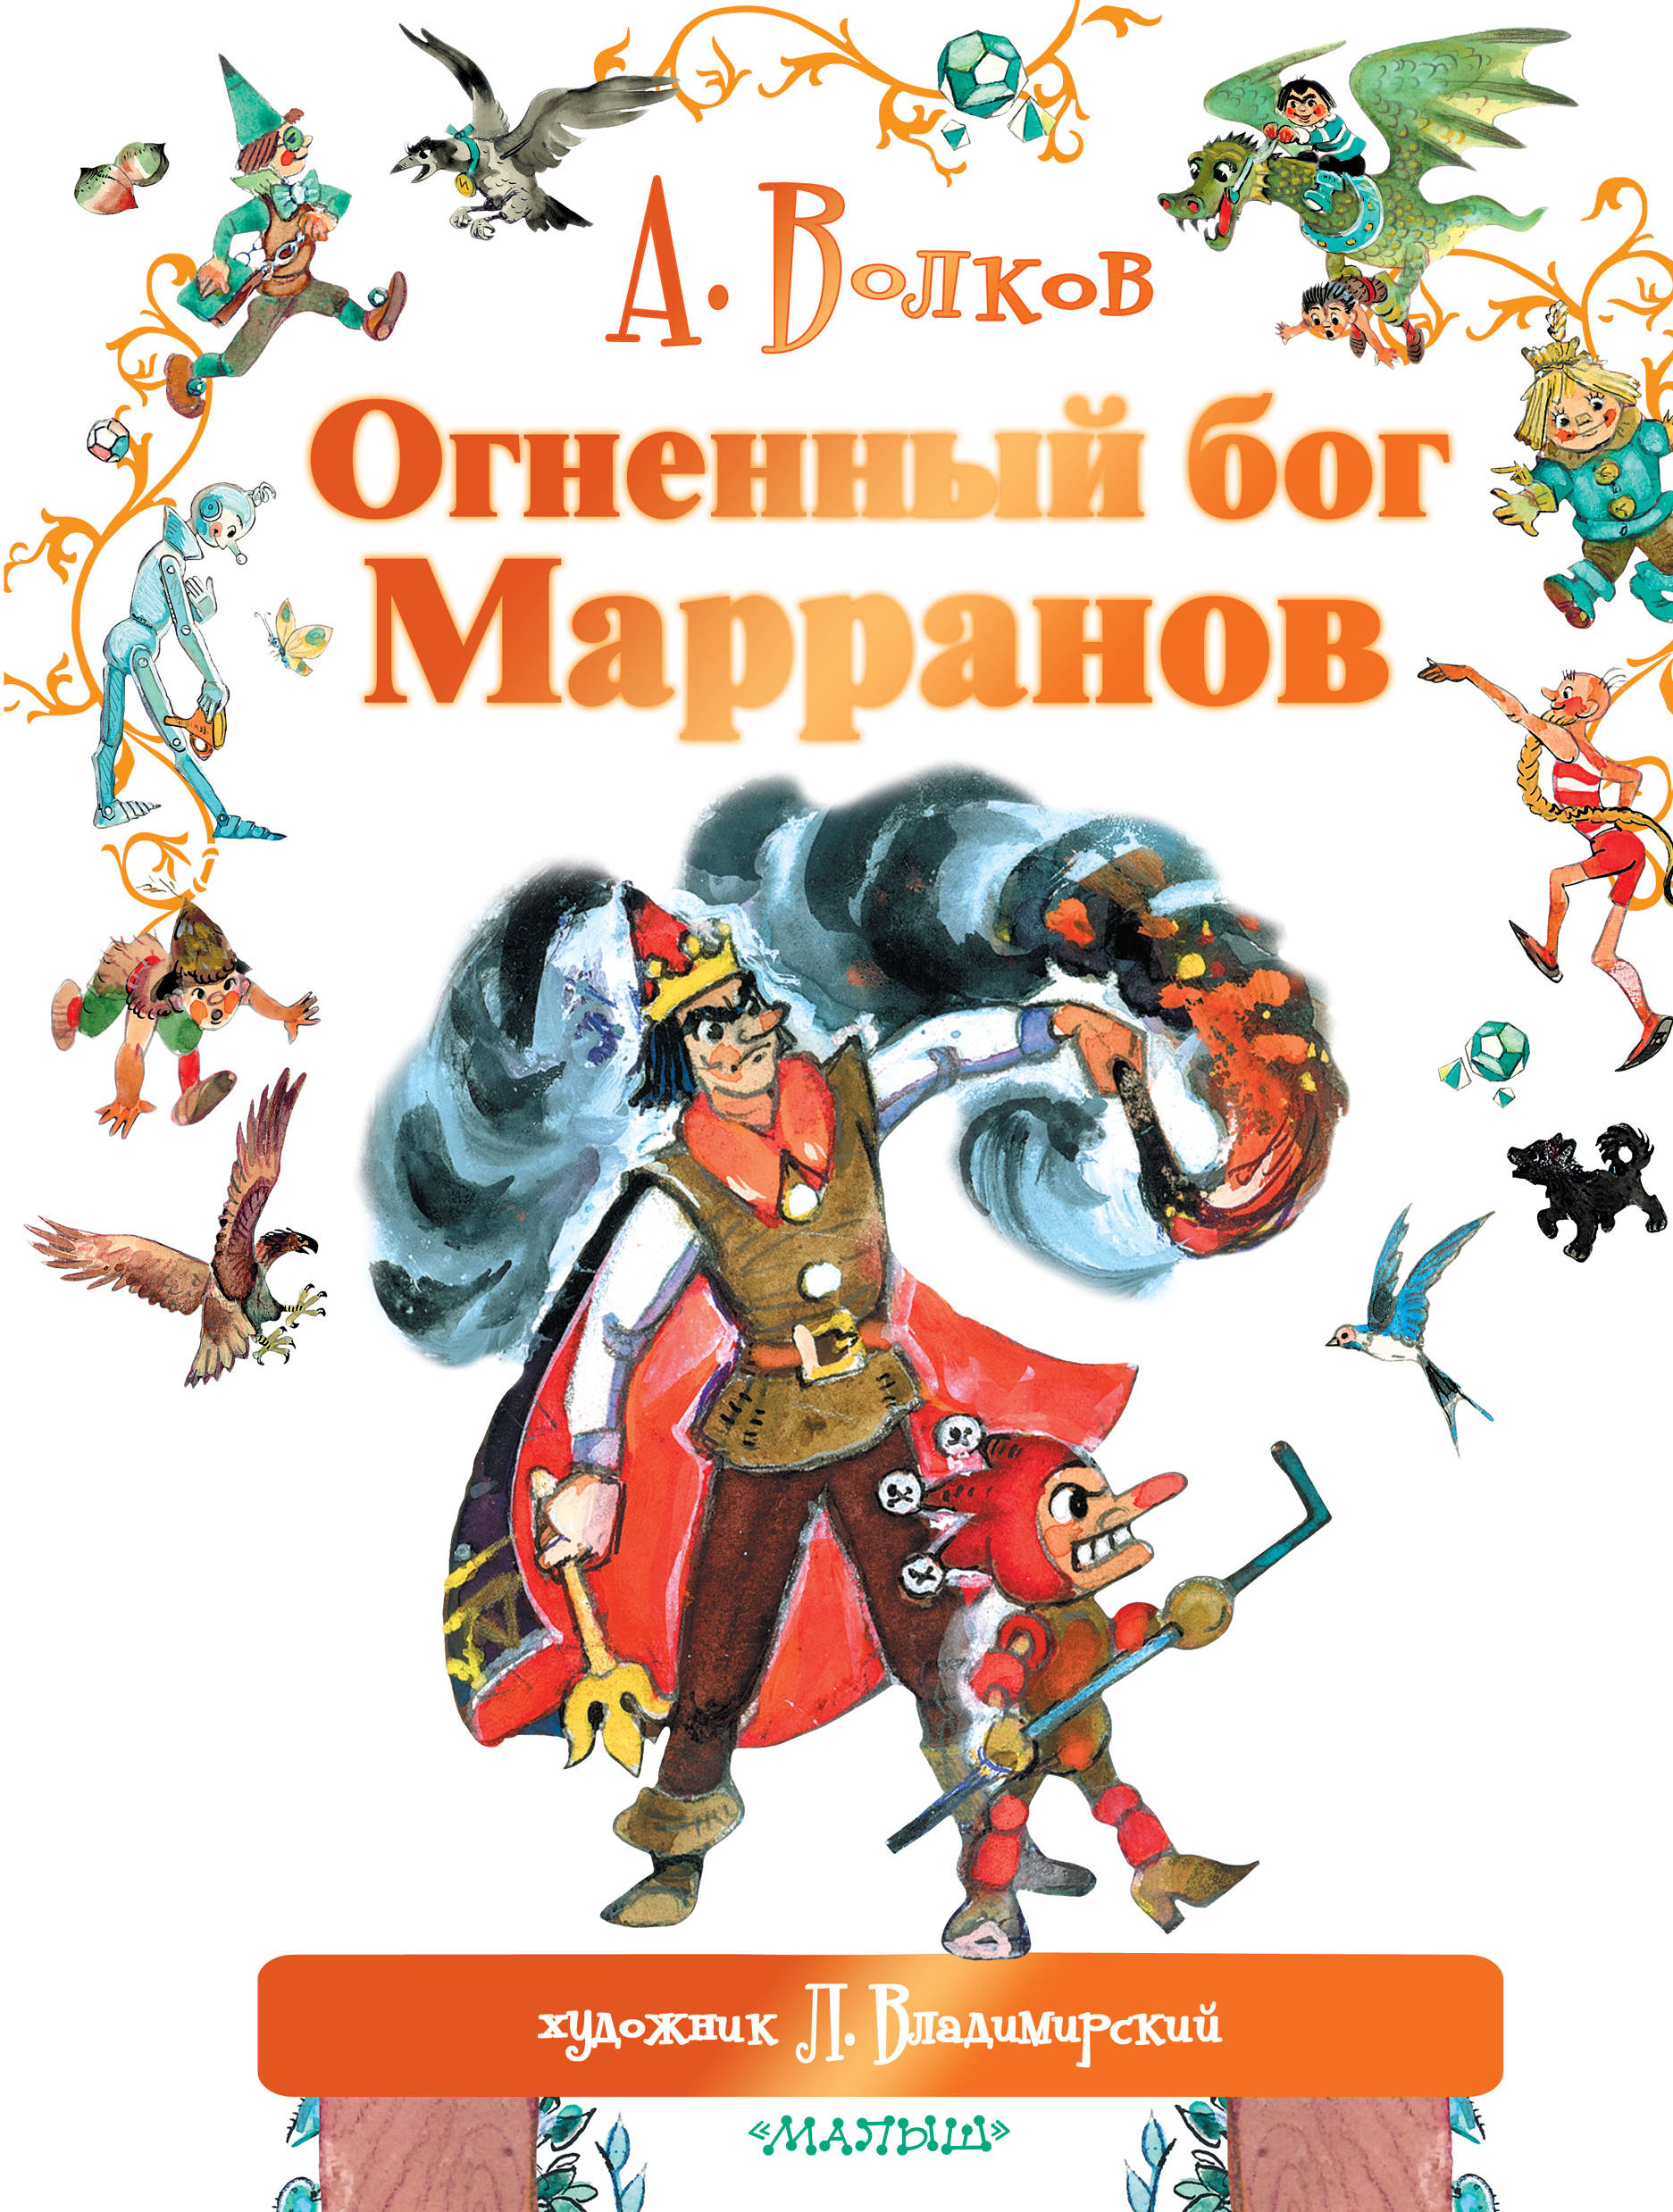 Волков Александр Мелентьевич - Огненный бог Марранов